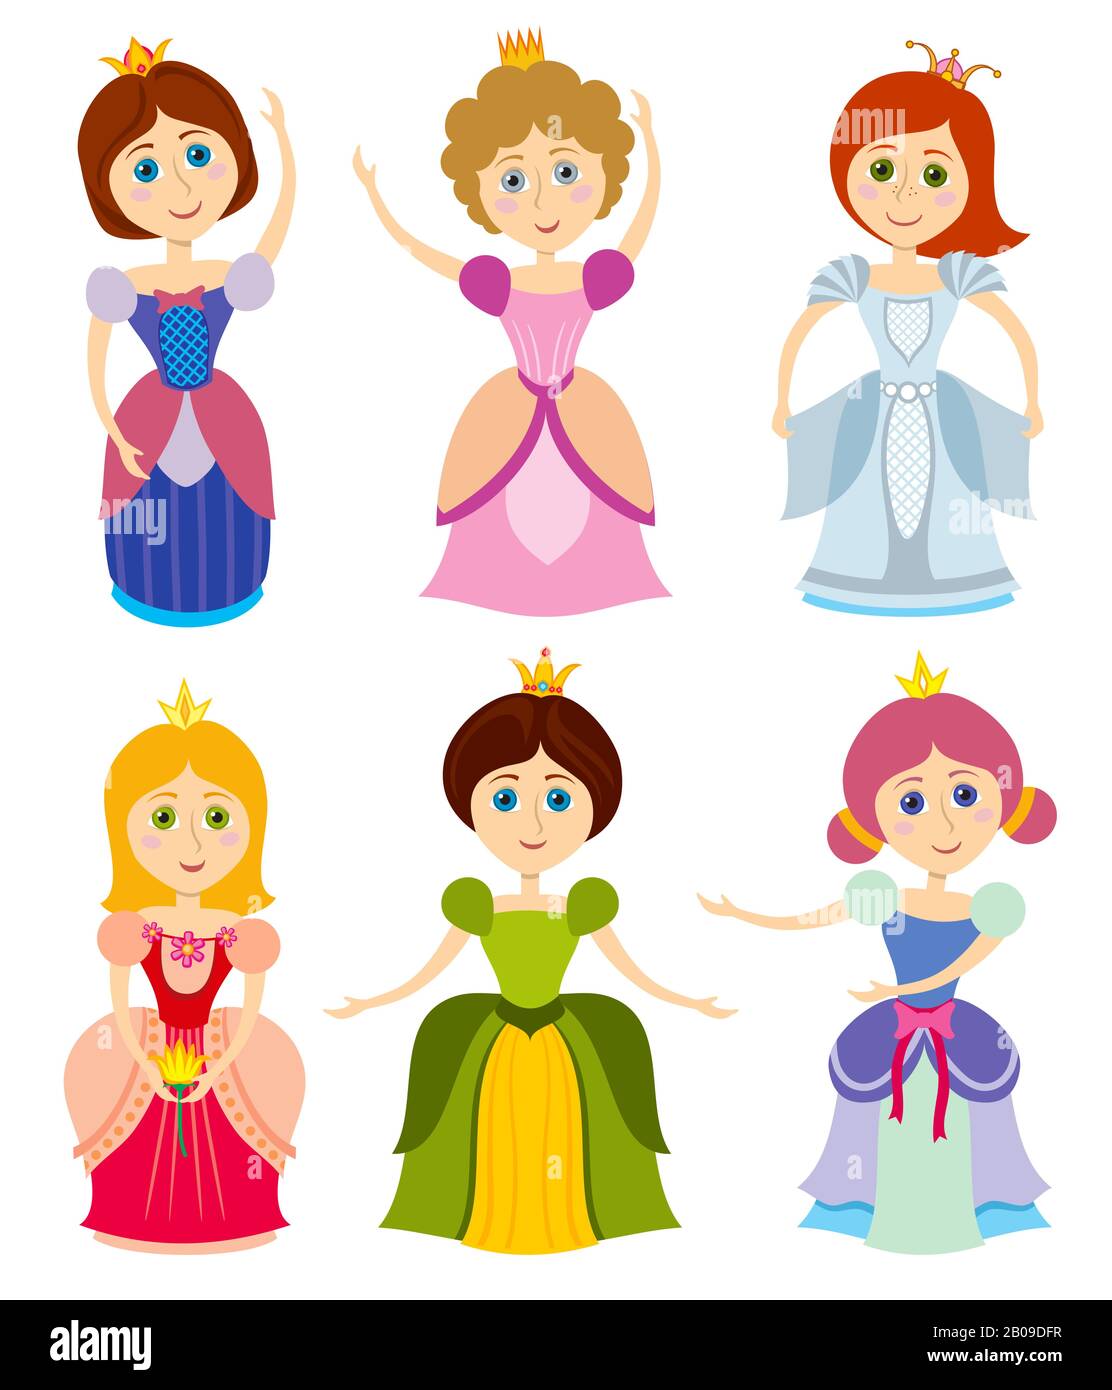 Les petites princesses mignonnes montrent les enfants girl vecteur de mode. Jeune princesse en robe, élégance personne princesse illustration Illustration de Vecteur